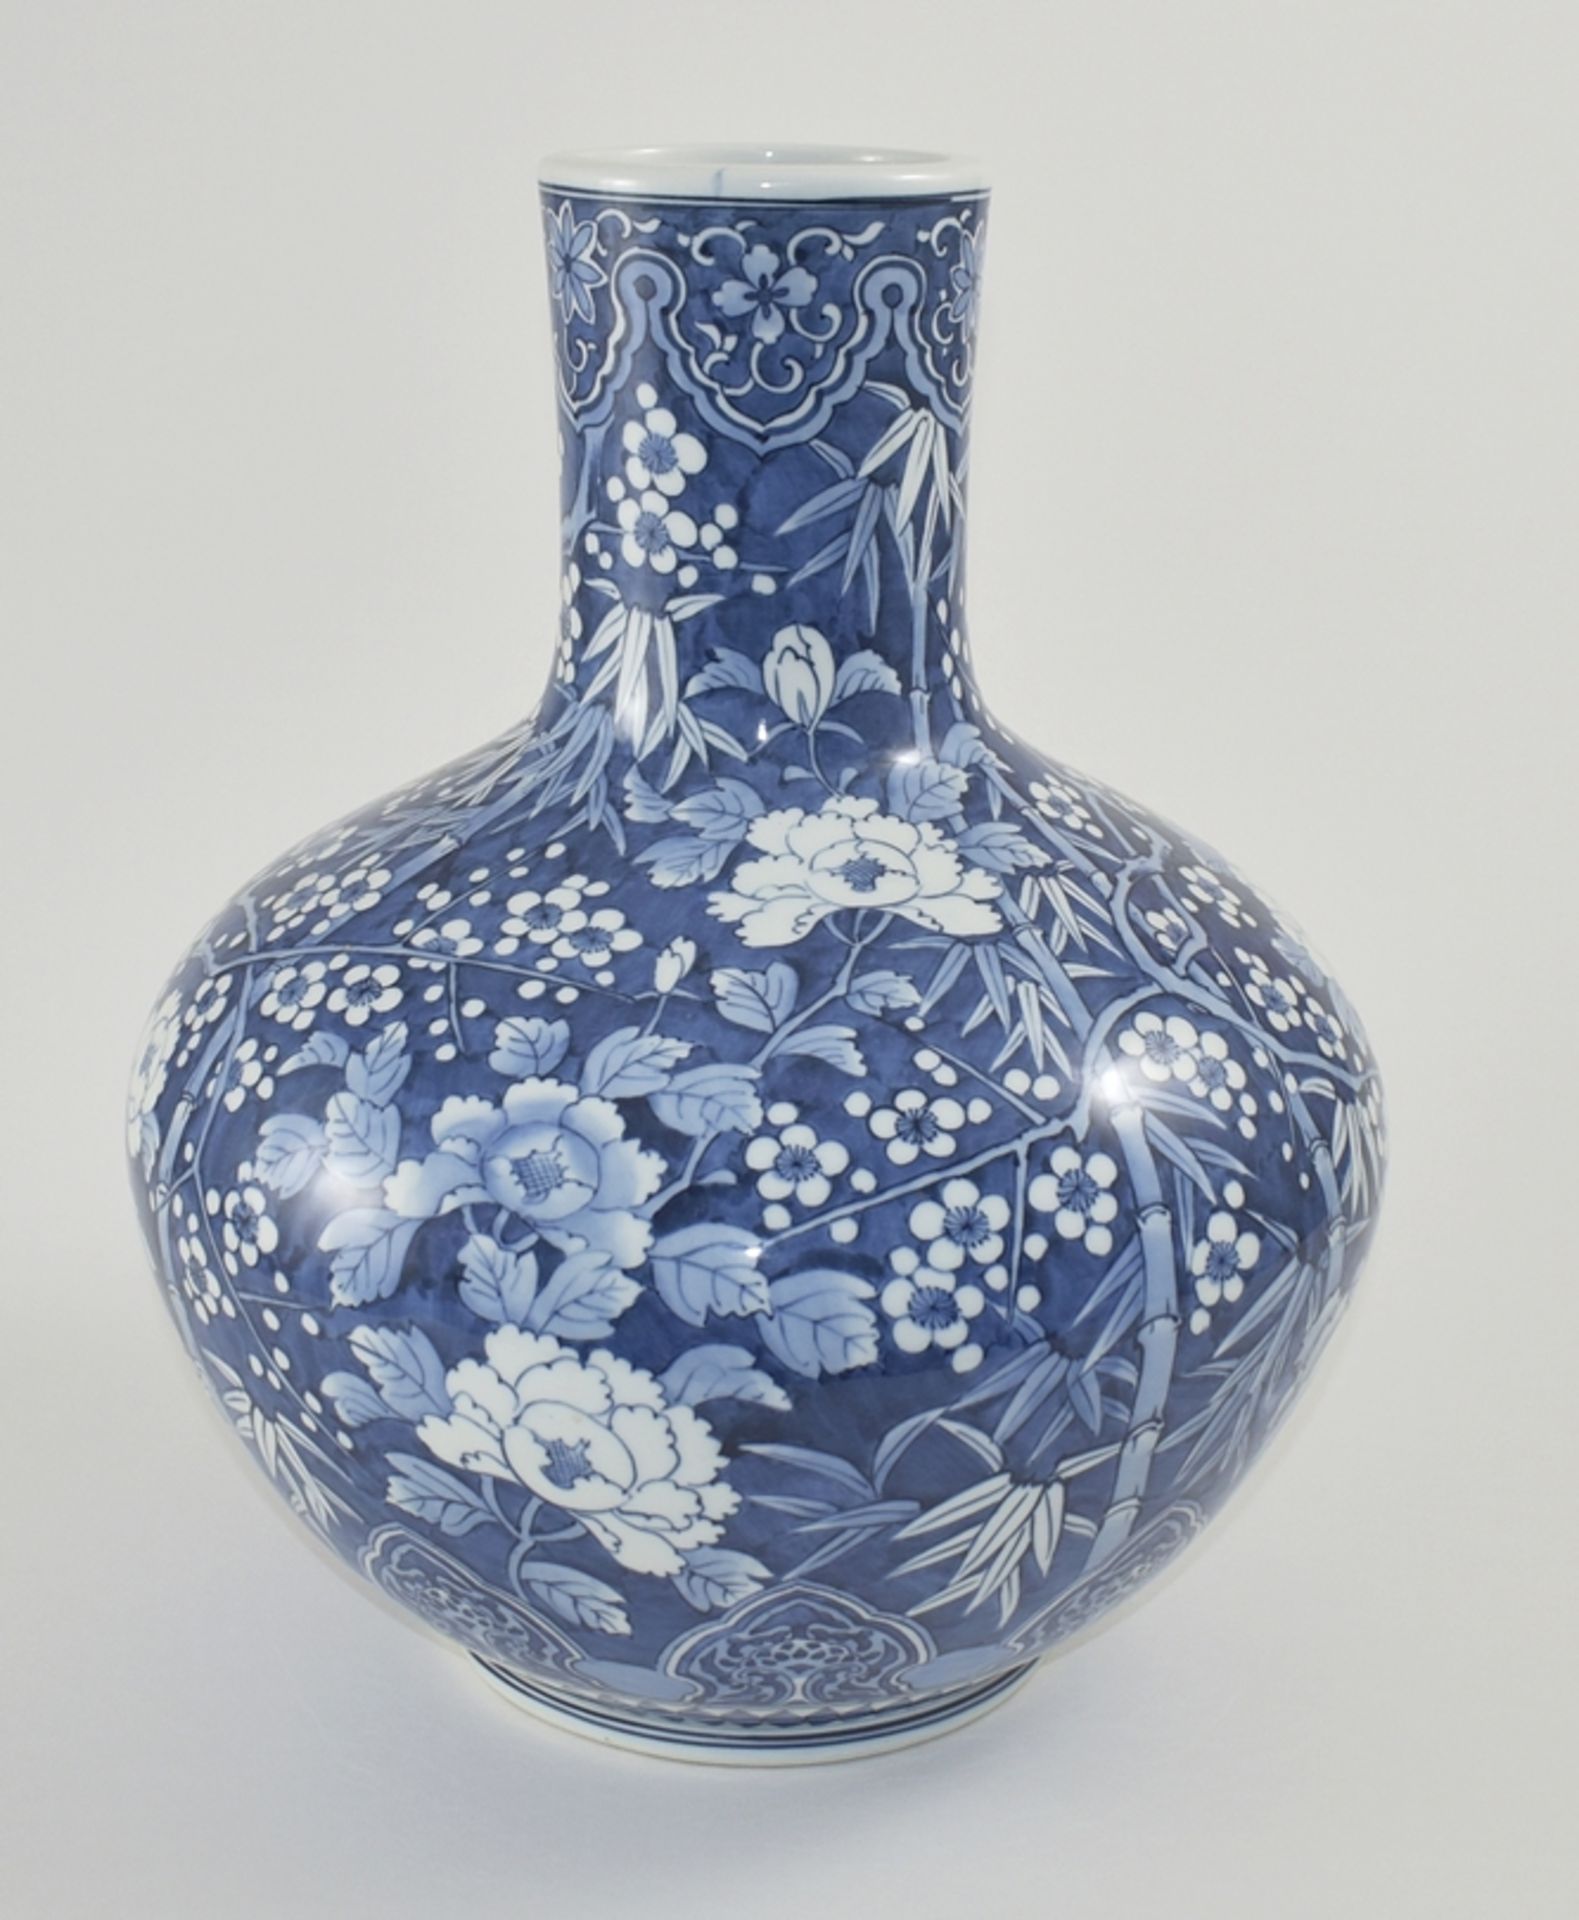 Große Vase. Kugeliger Korpus mit zylindrischem Hals, blauer Unterglasurdekor. Japan. H 44 cm